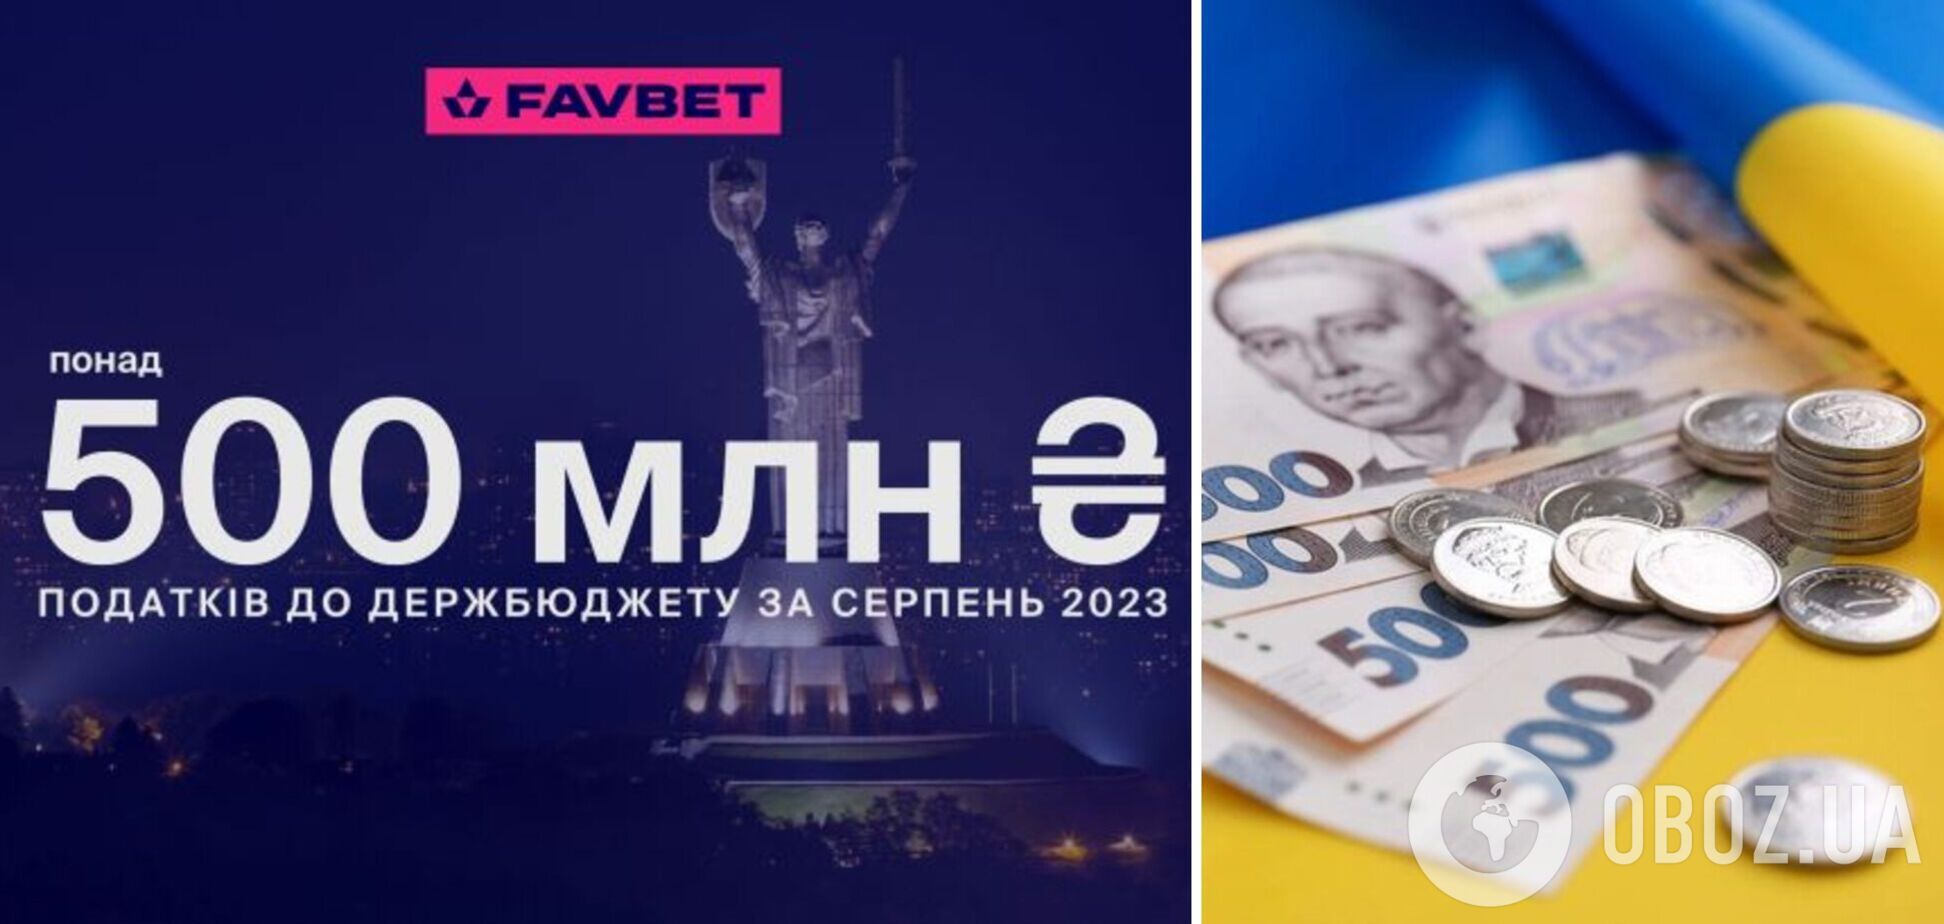 Favbet у серпні сплатив  до держбюджету понад 500 млн грн податків